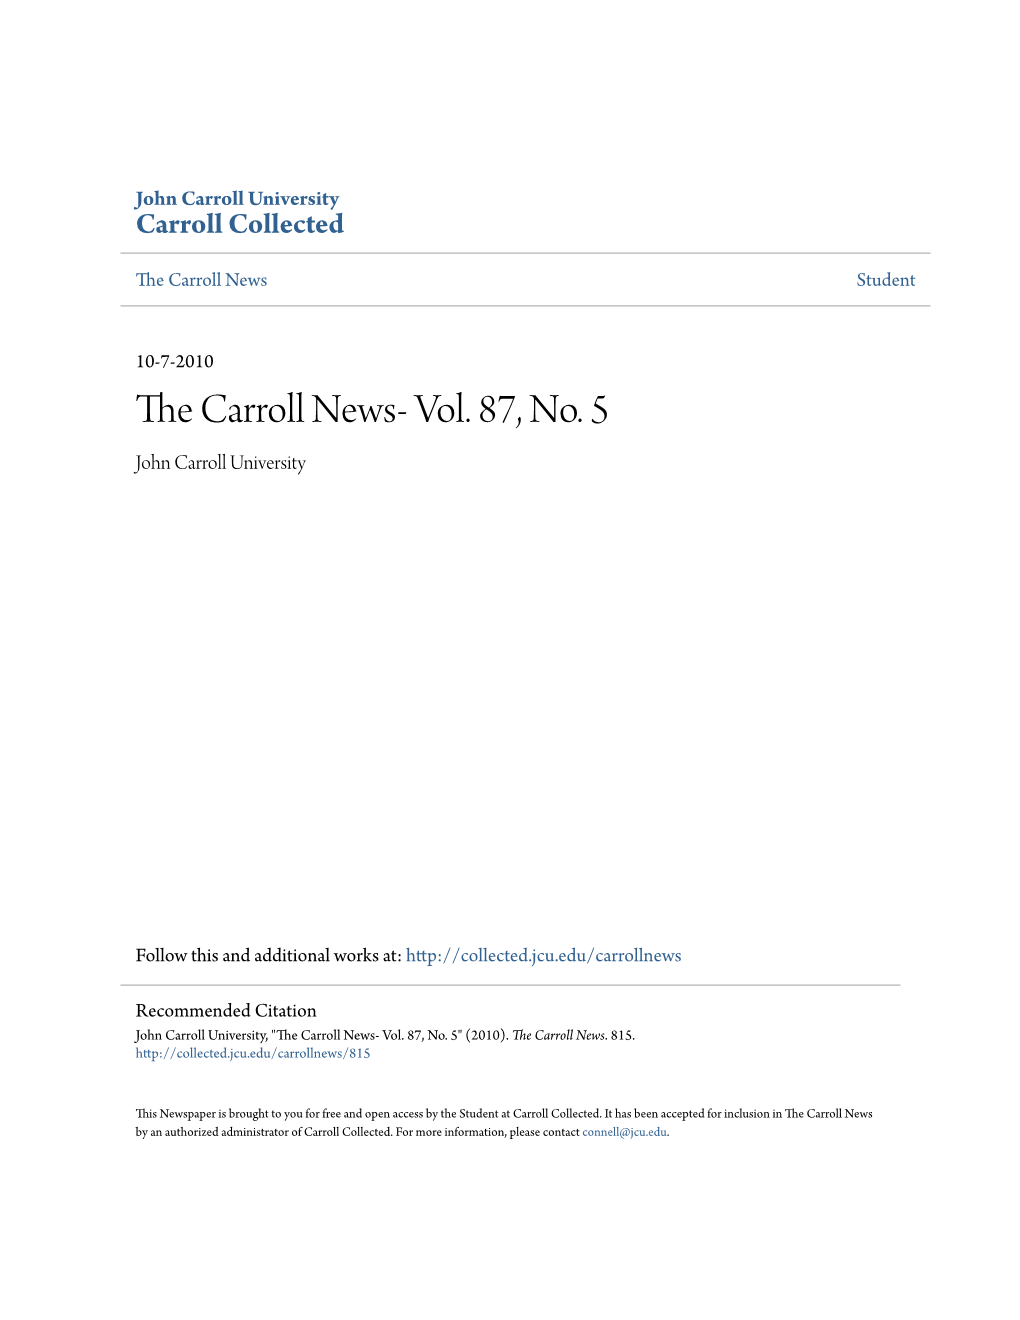 The Carroll News- Vol. 87, No. 5